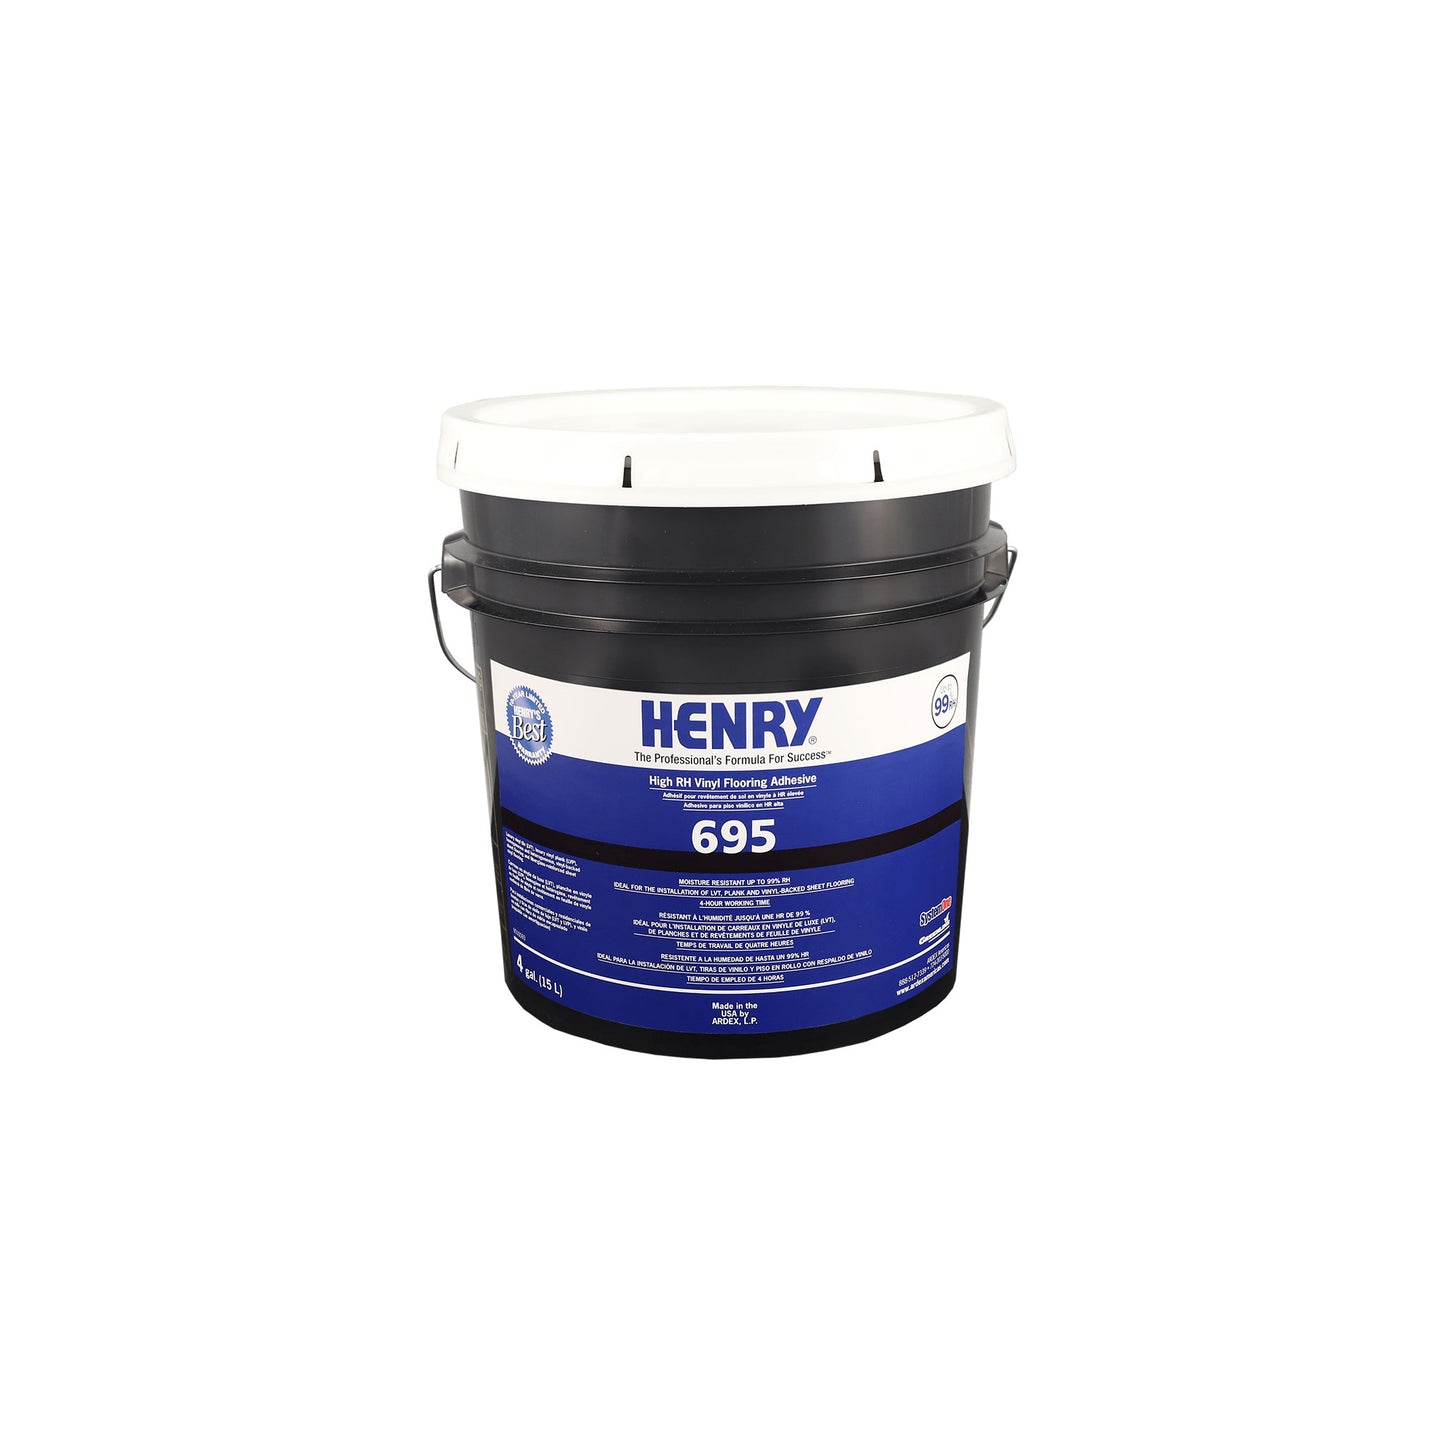 Henry 695 Adhésif pour revêtement de vinyle haute résistance ARDEX H695-04 H695-15